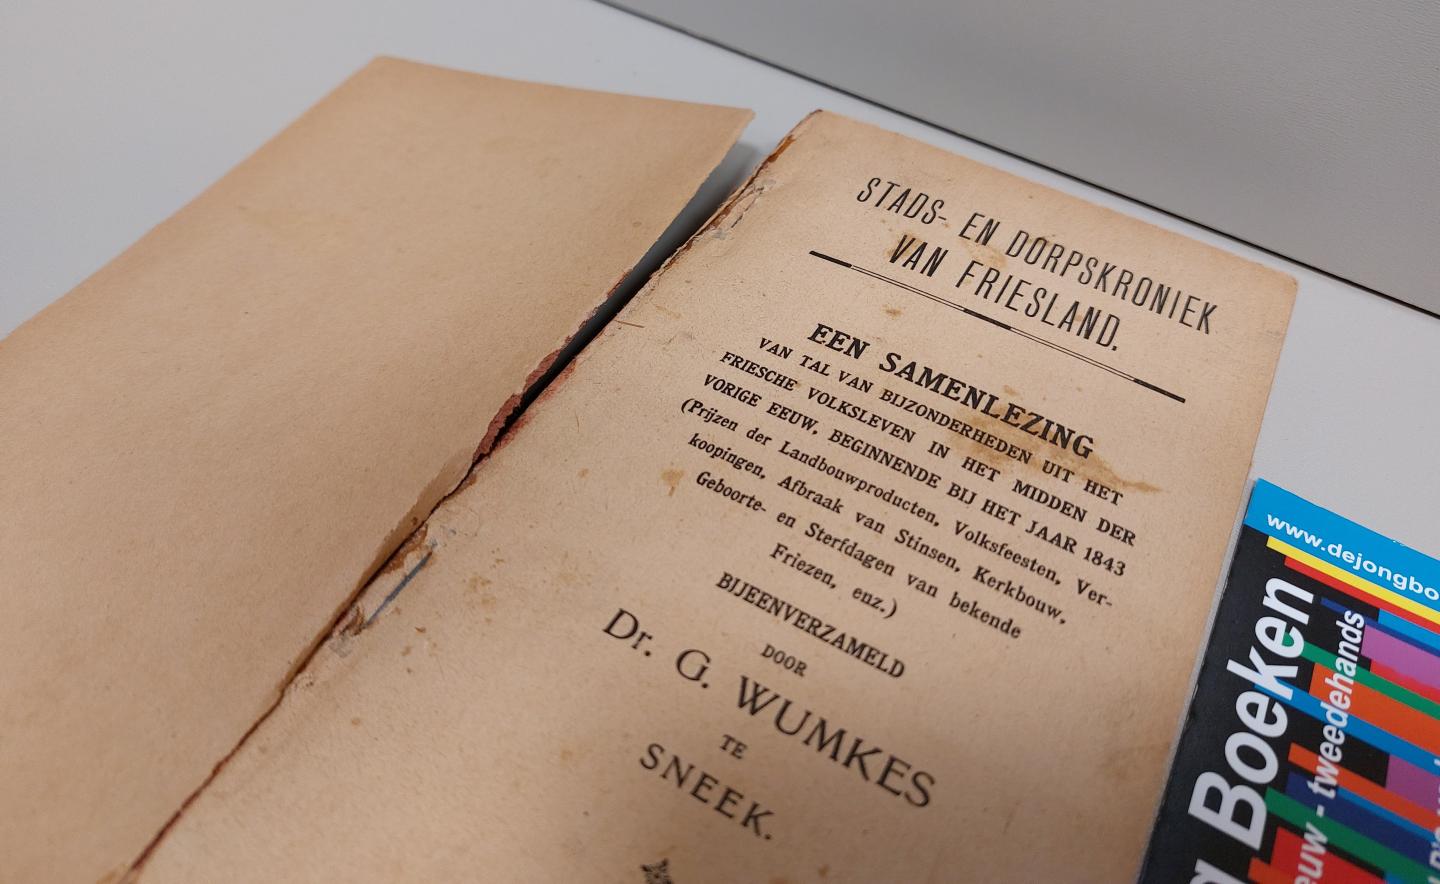 Dr. G. Wumkes - Stads- en dorpskroniek van Friesland. een samen lezing van tal van bijzonderheden uit het friesche volksleven in het midden der vorige eeuw, beginnende bij het jaar 1843